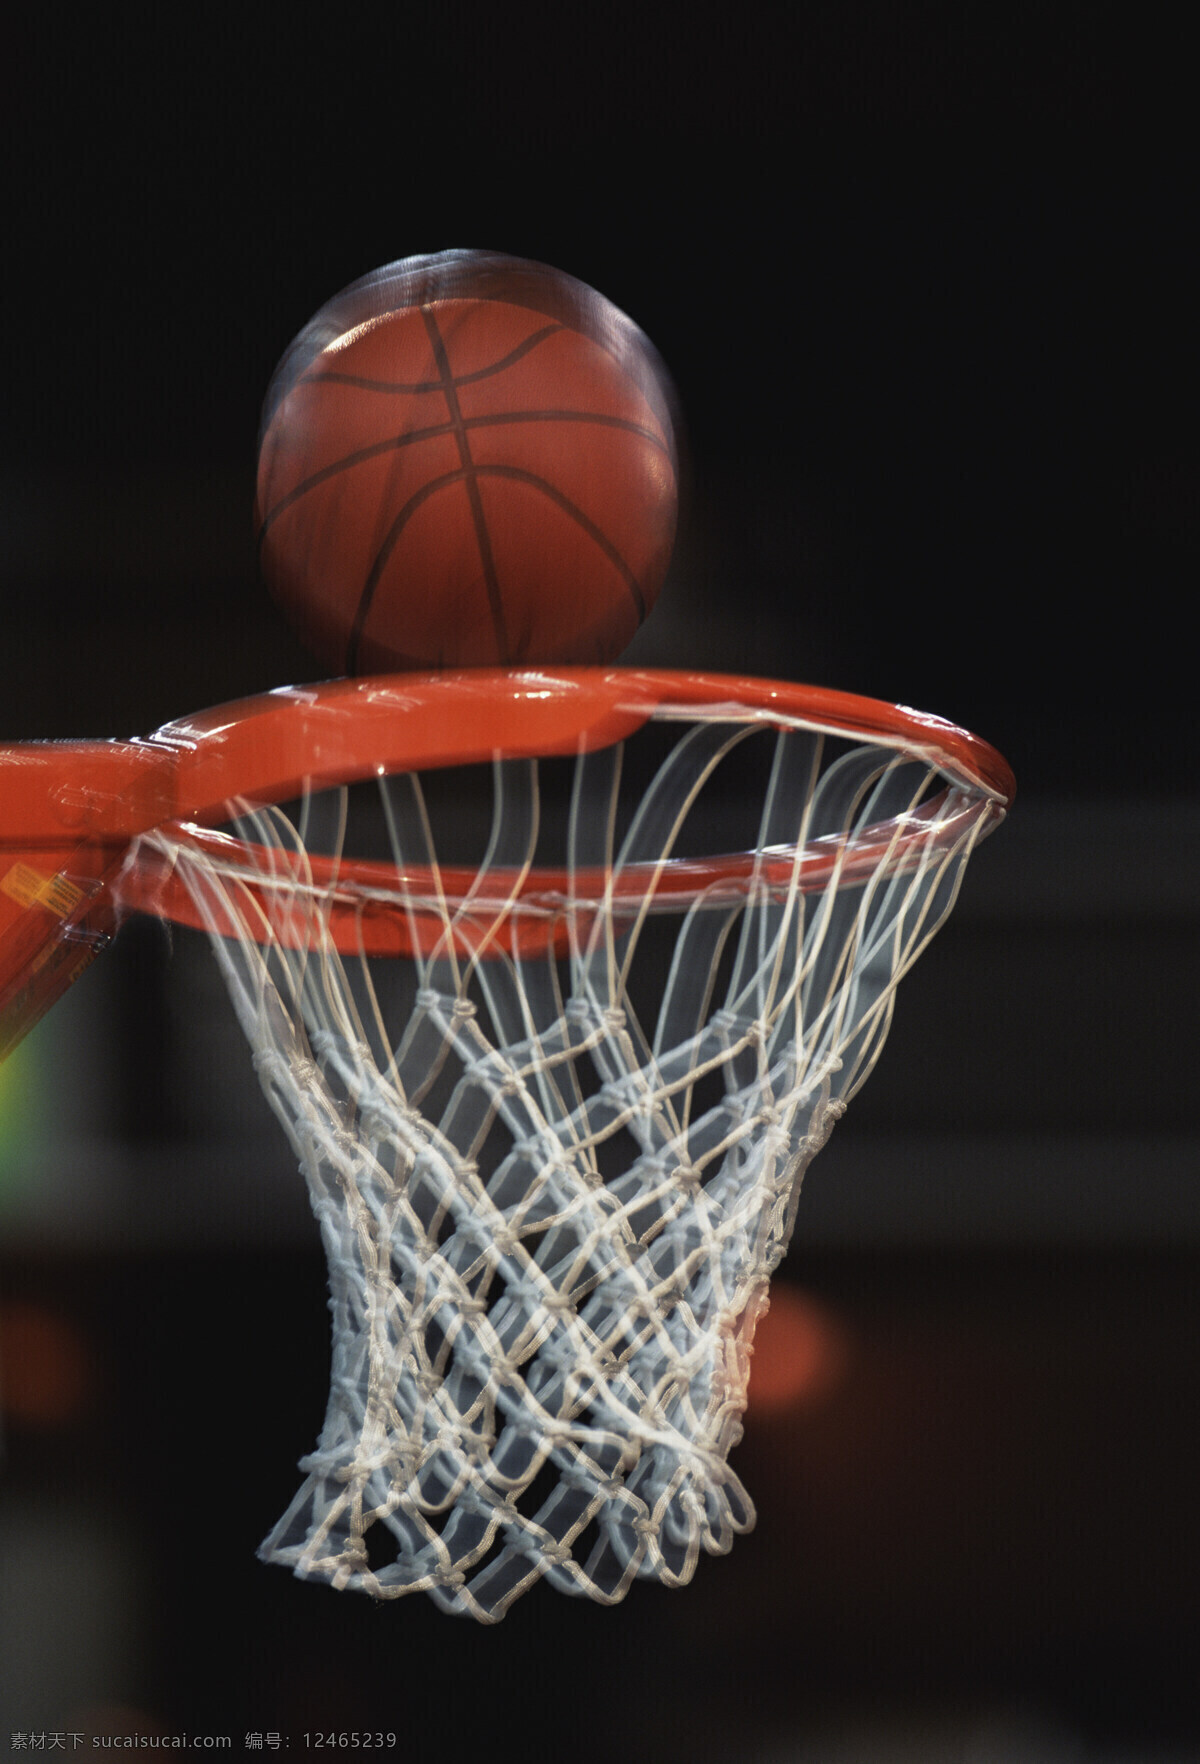 篮球 入 篮 激情 体育运动 投篮 文化艺术 运动 篮球入篮 psd源文件